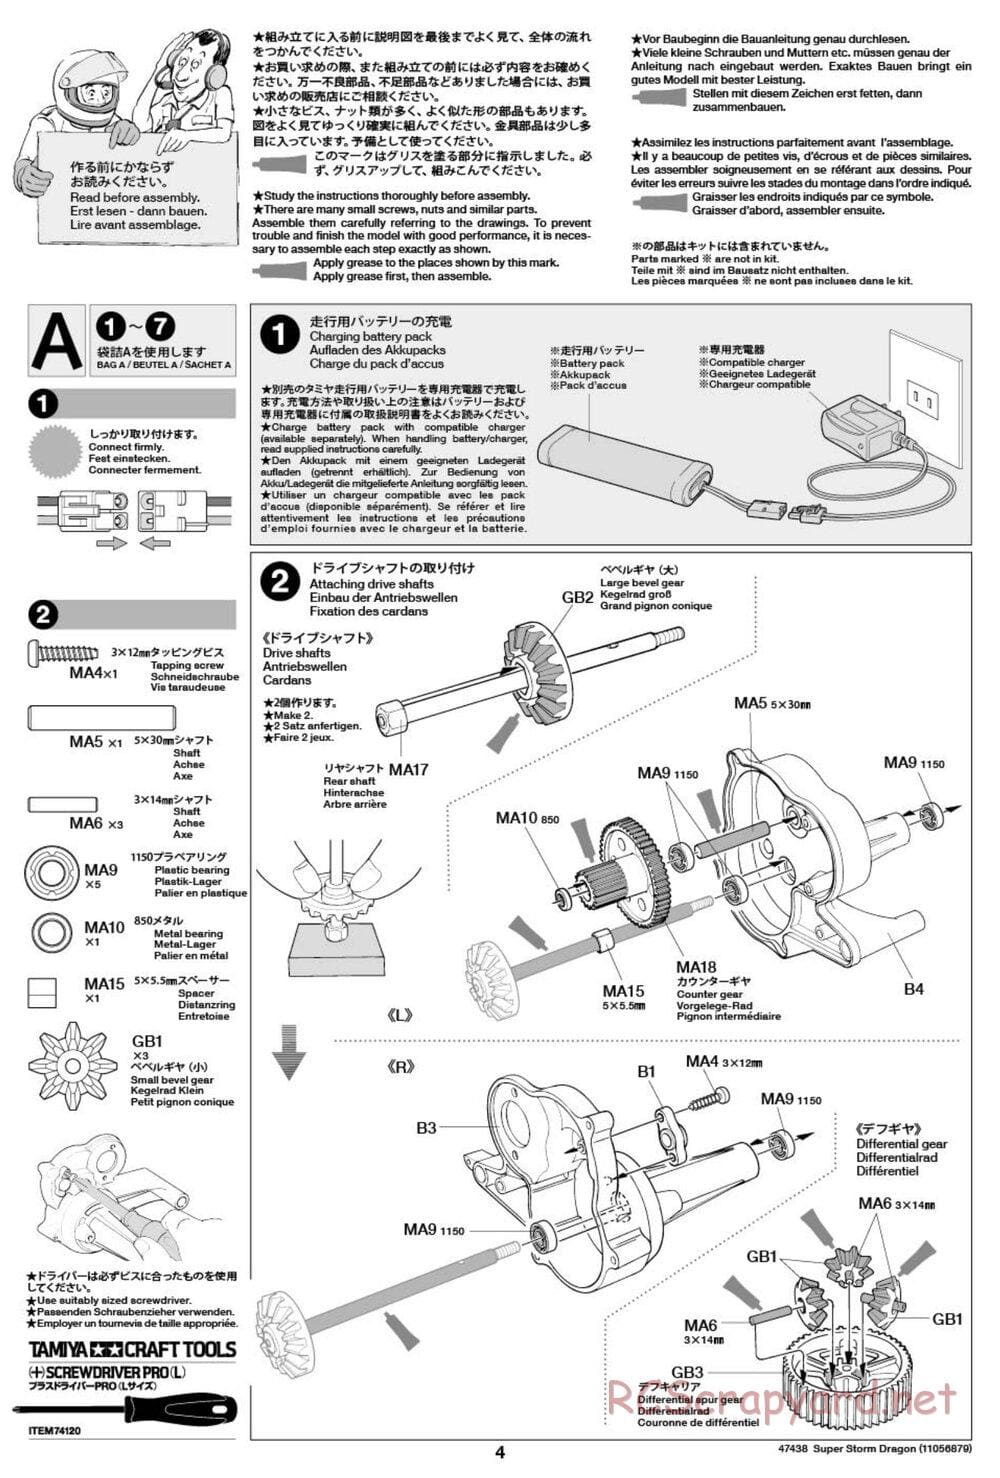 Tamiya - Super Storm Dragon Chassis - Manual - Page 4